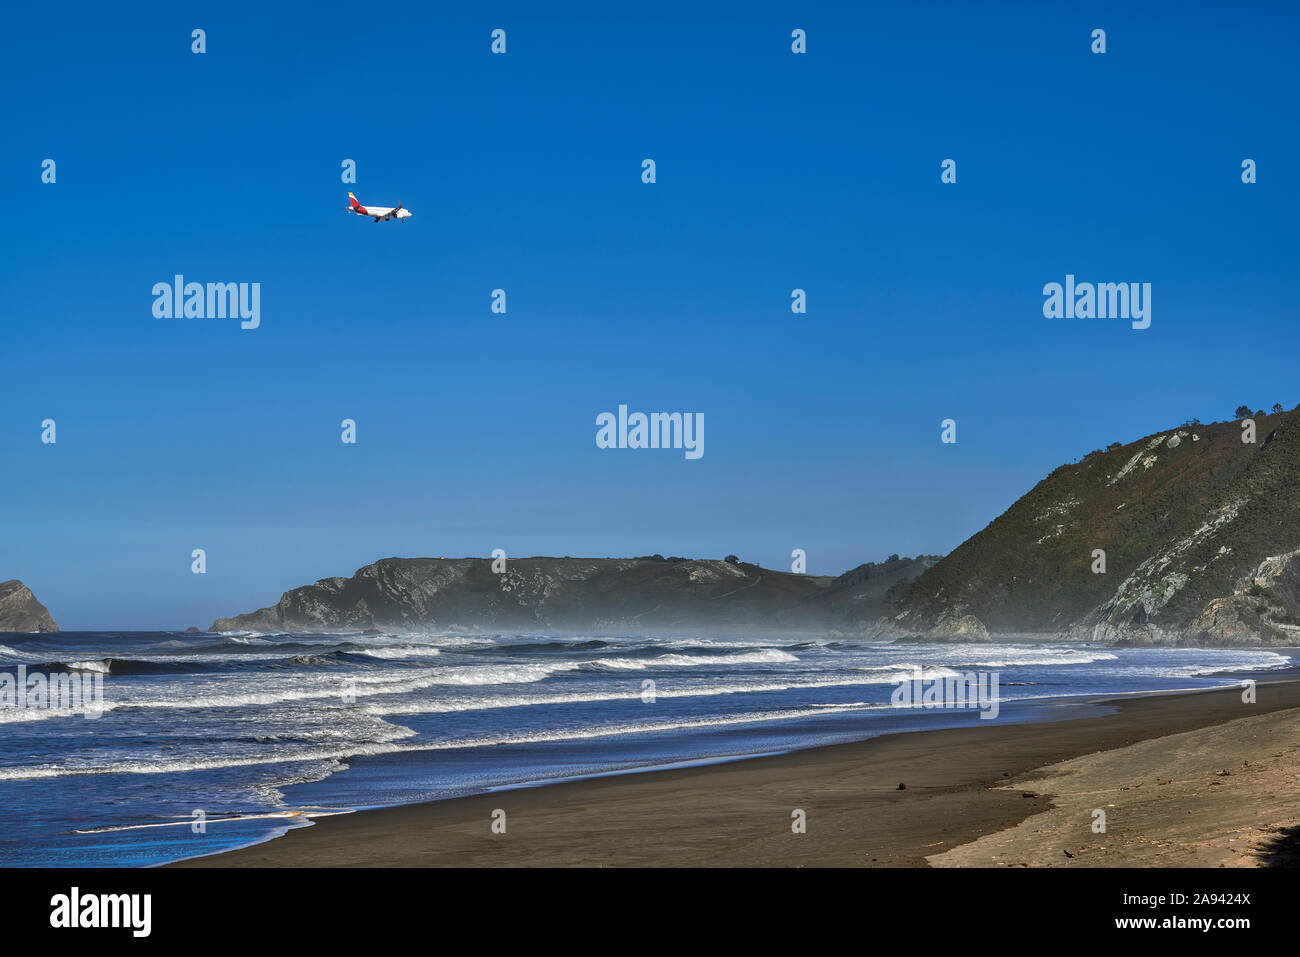 San juan de la arena fotografías e imágenes de alta resolución - Alamy